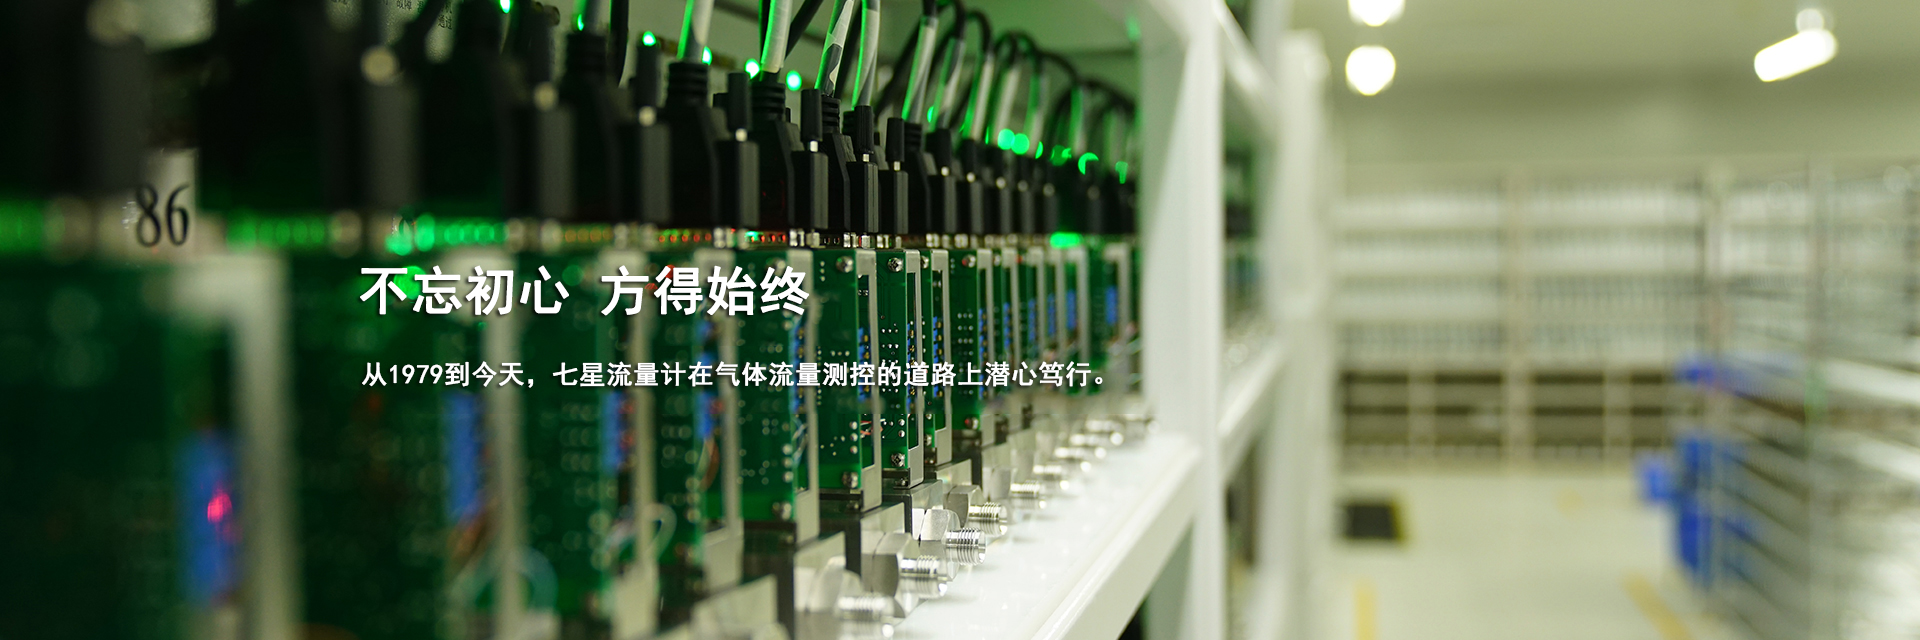 北京七星华创流量计有限公司产品有：热式空气质量流量计，实验室气体流量计，毛细管流量测试仪，微小气体流量计